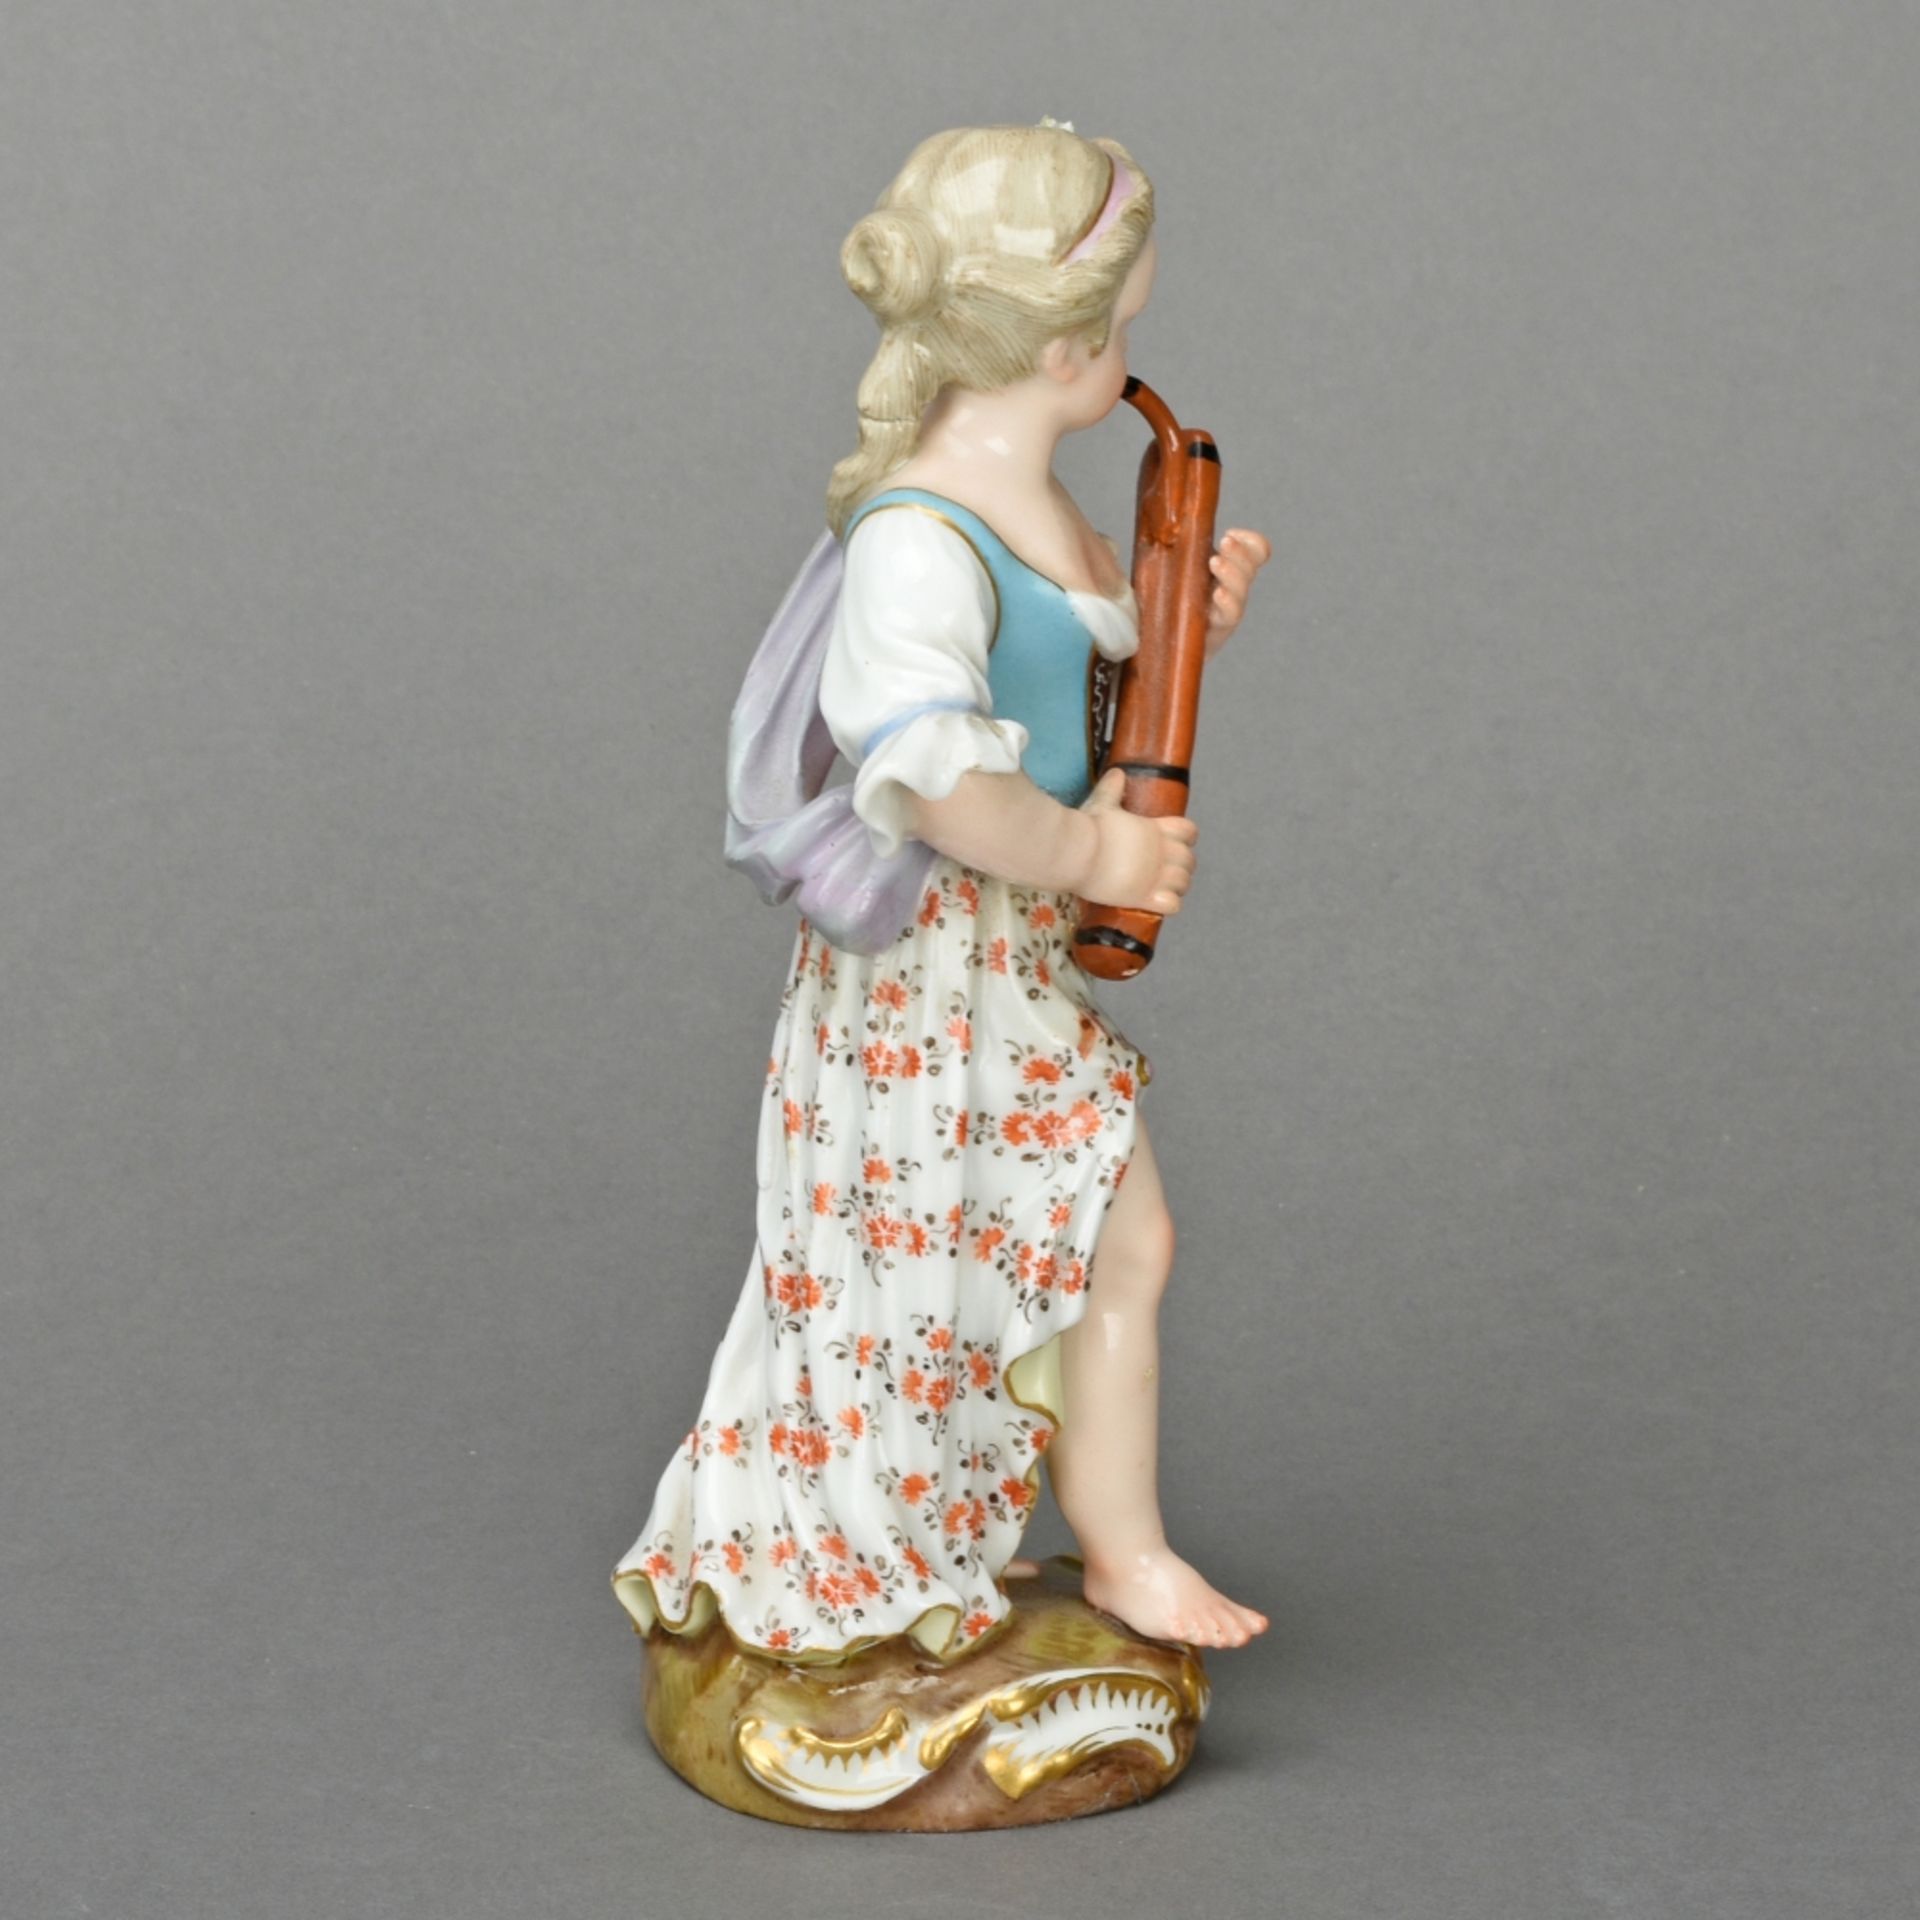 Fagottspielerin aus der Mädchenkapelle - Bild 4 aus 5